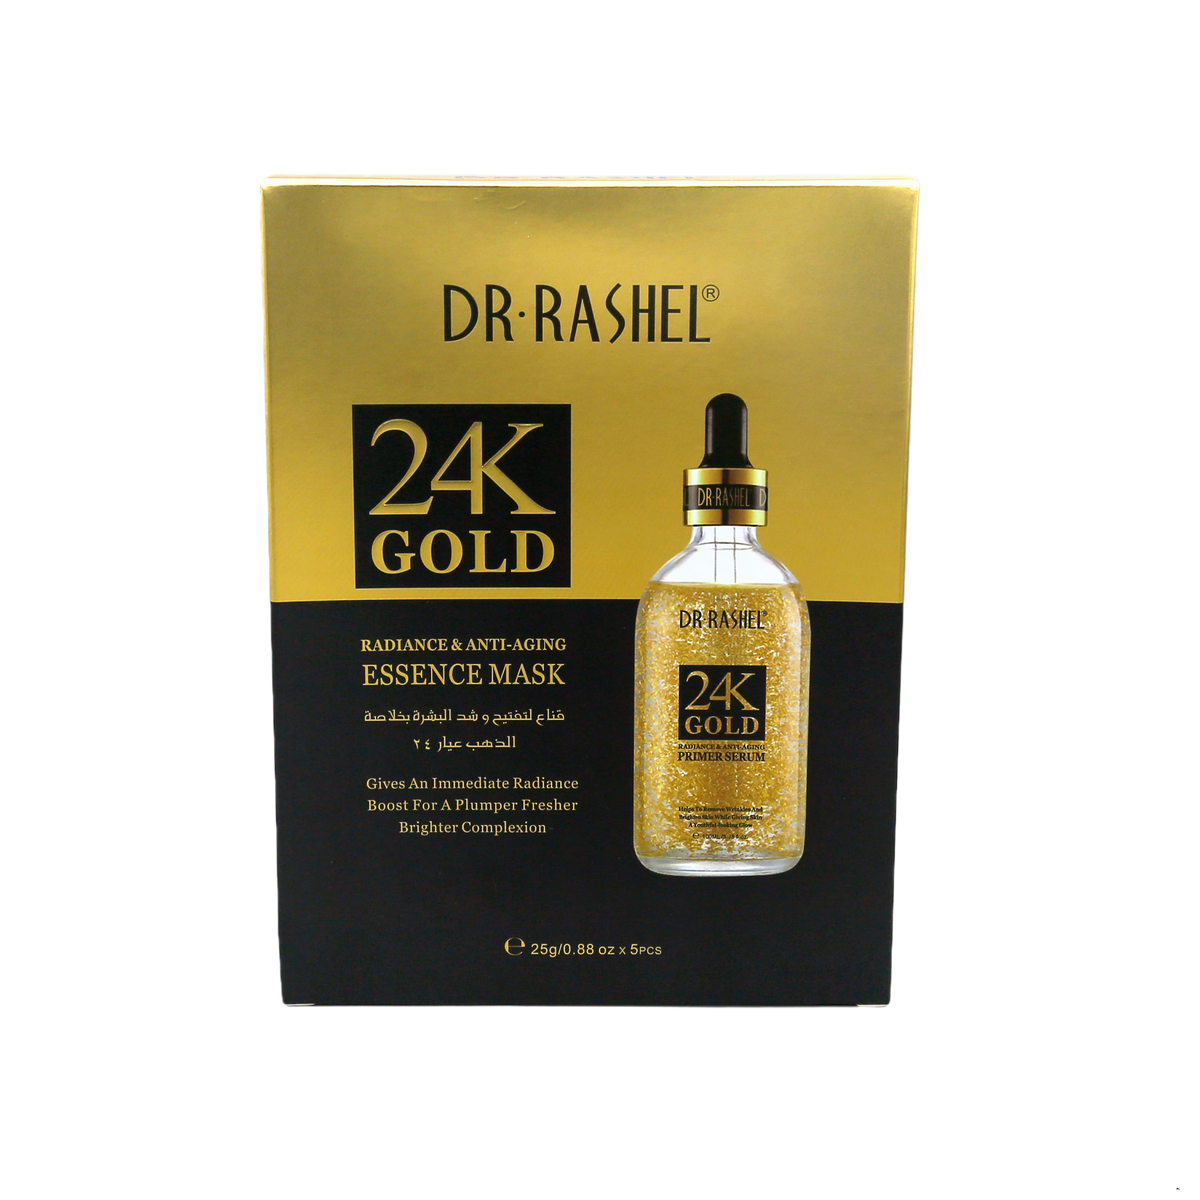 Dr Rashel 24K Gold Essence Mask Radiance &amp; Anti Aging freeshipping - lasertag.pk